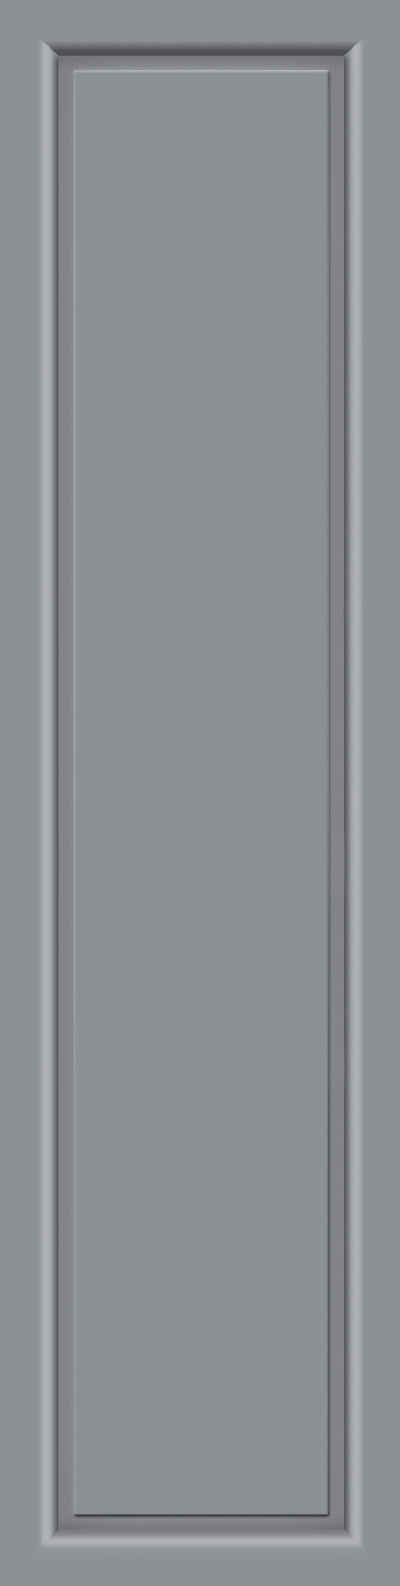 KM Zaun Türseitenteil »S04«, BxH: 50x208 cm, für Alu-Haustür, grau